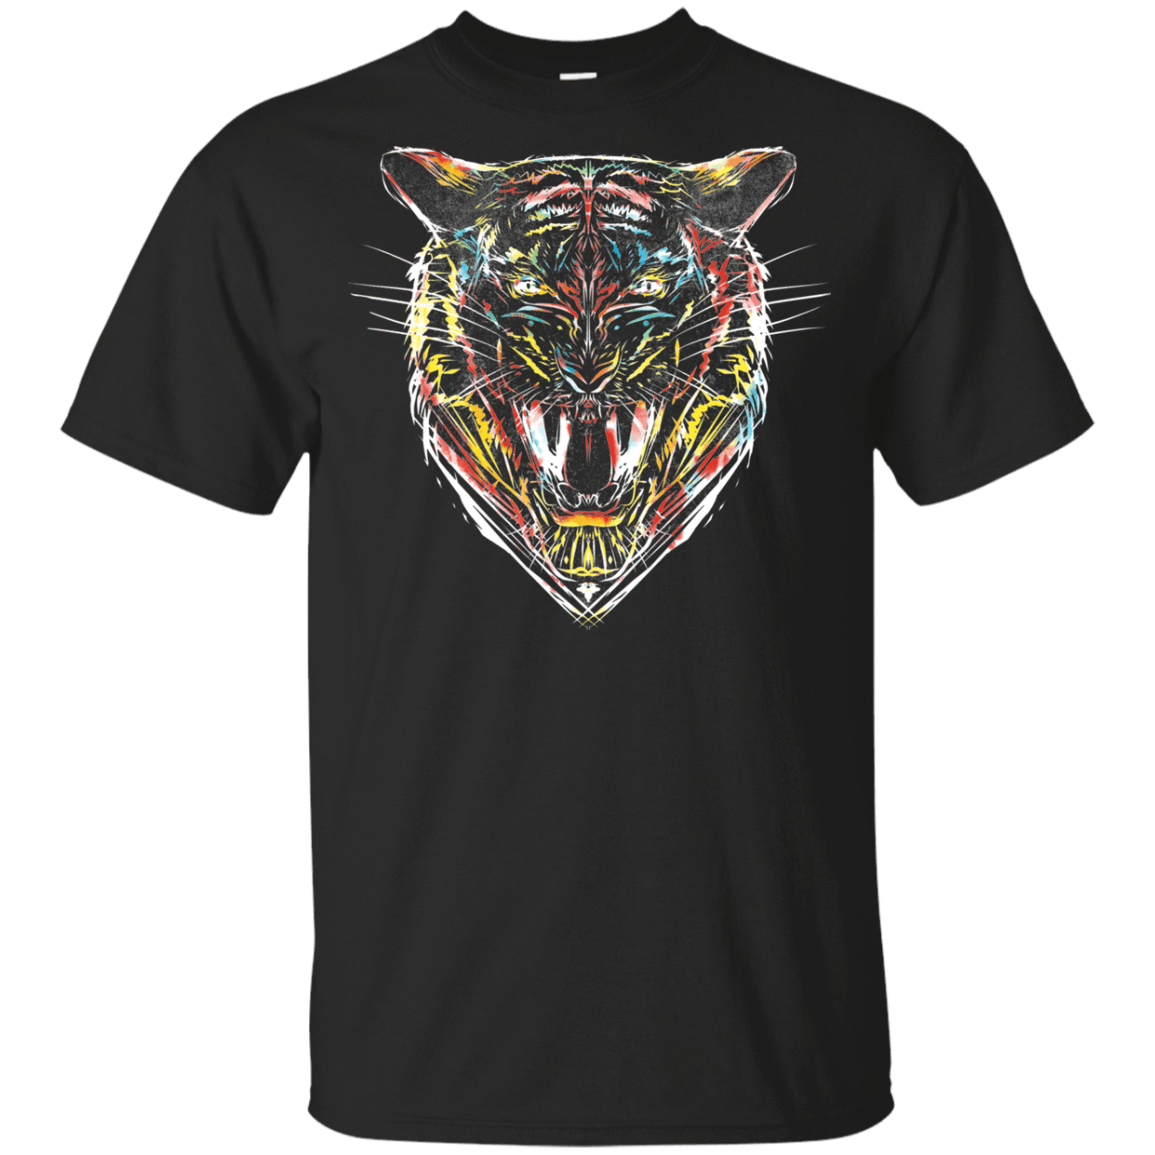 T-Shirts Black / YXS Stencil Tiger Youth T-Shirt